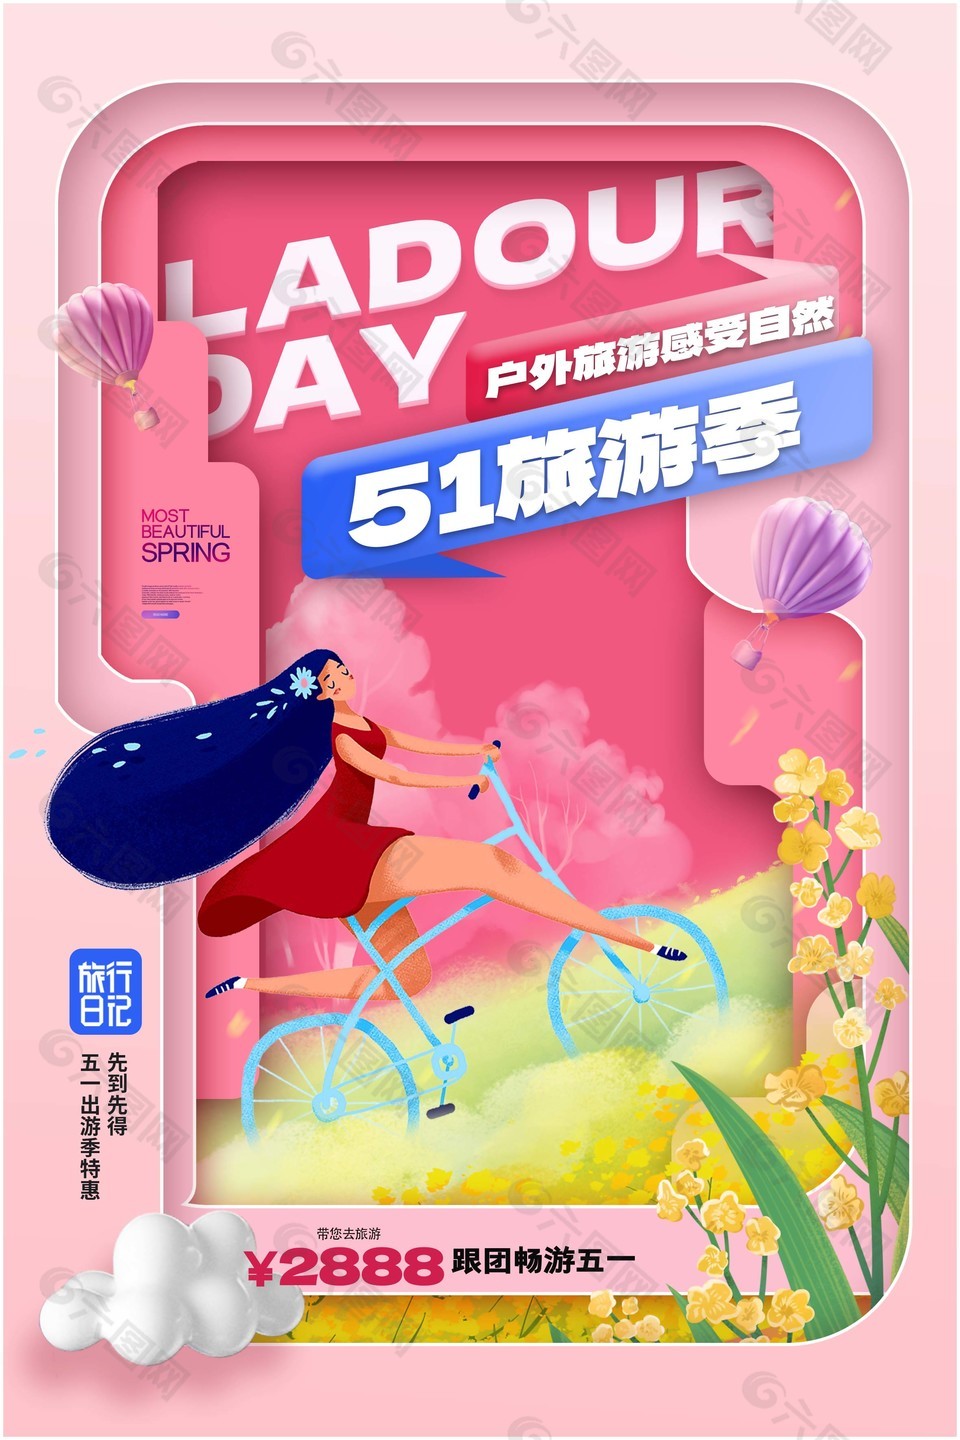 粉色剪纸风51旅游季跟团活动海报设计